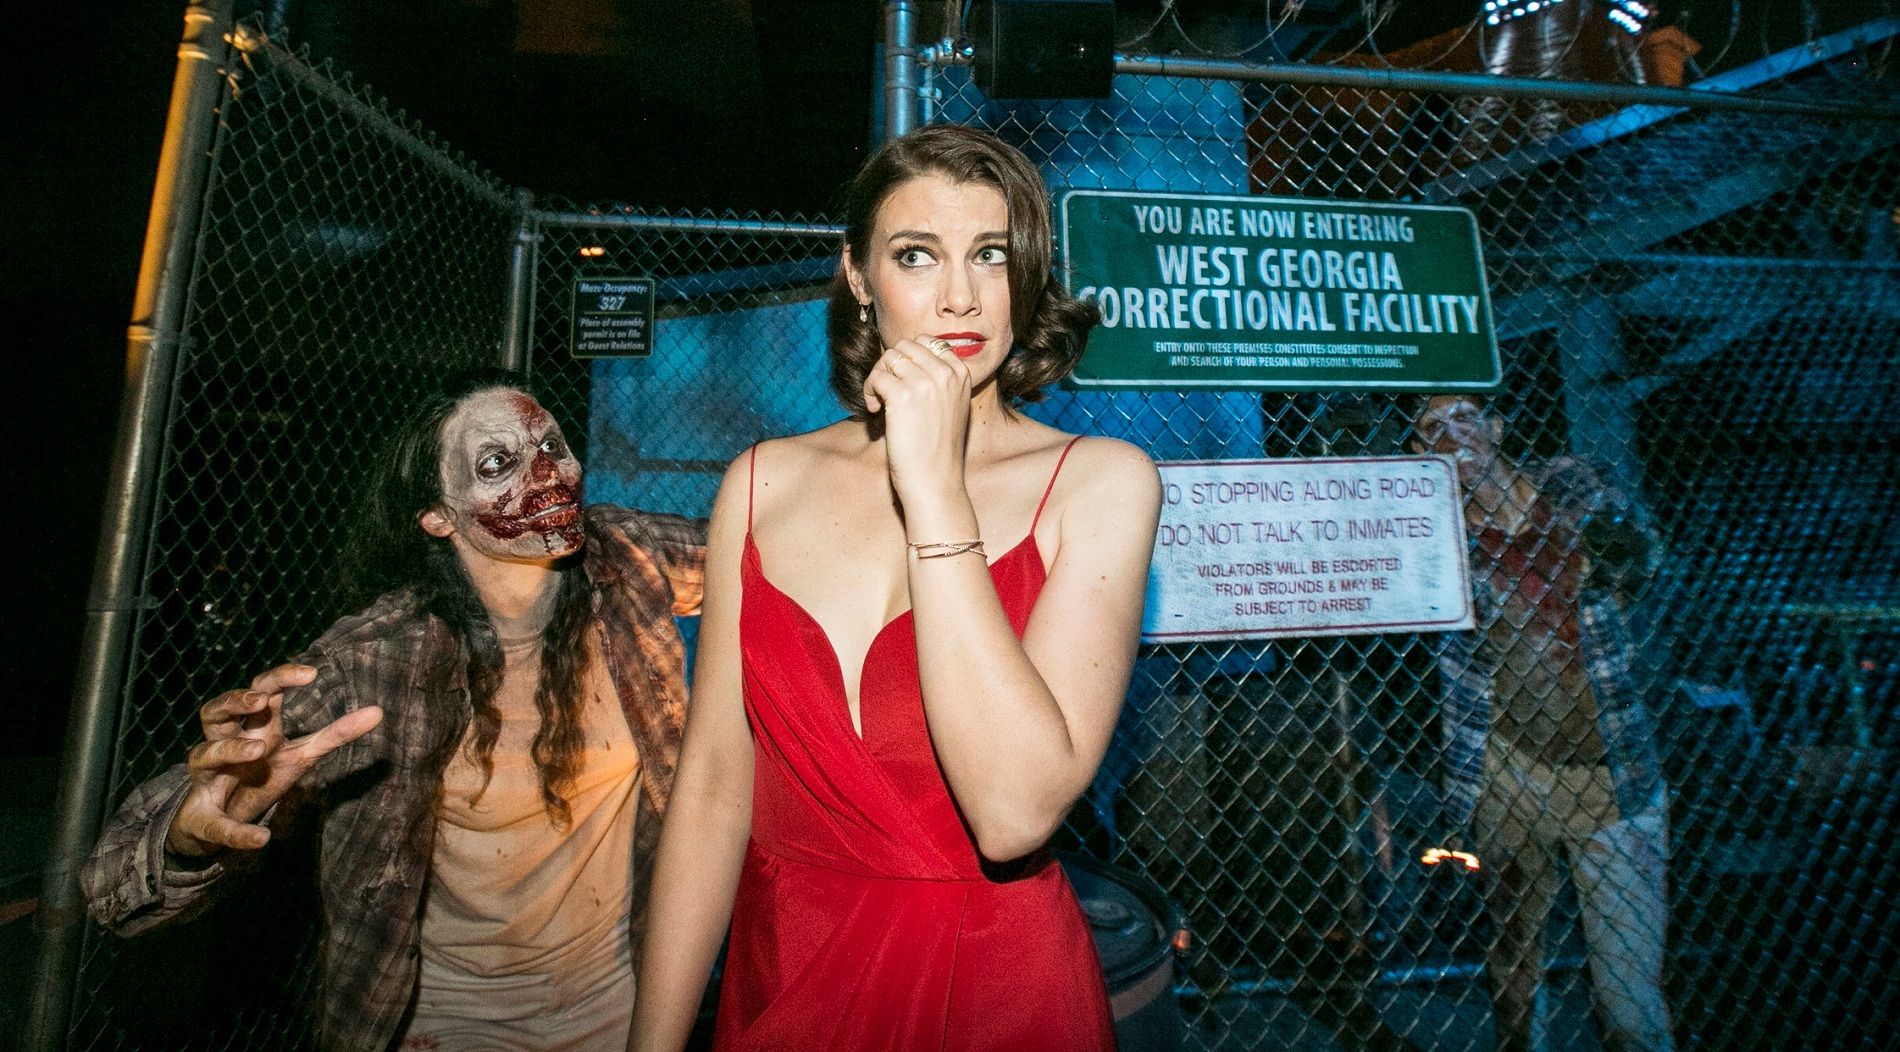 Pronte ad avere paura nel parco divertimenti a tema zombie?